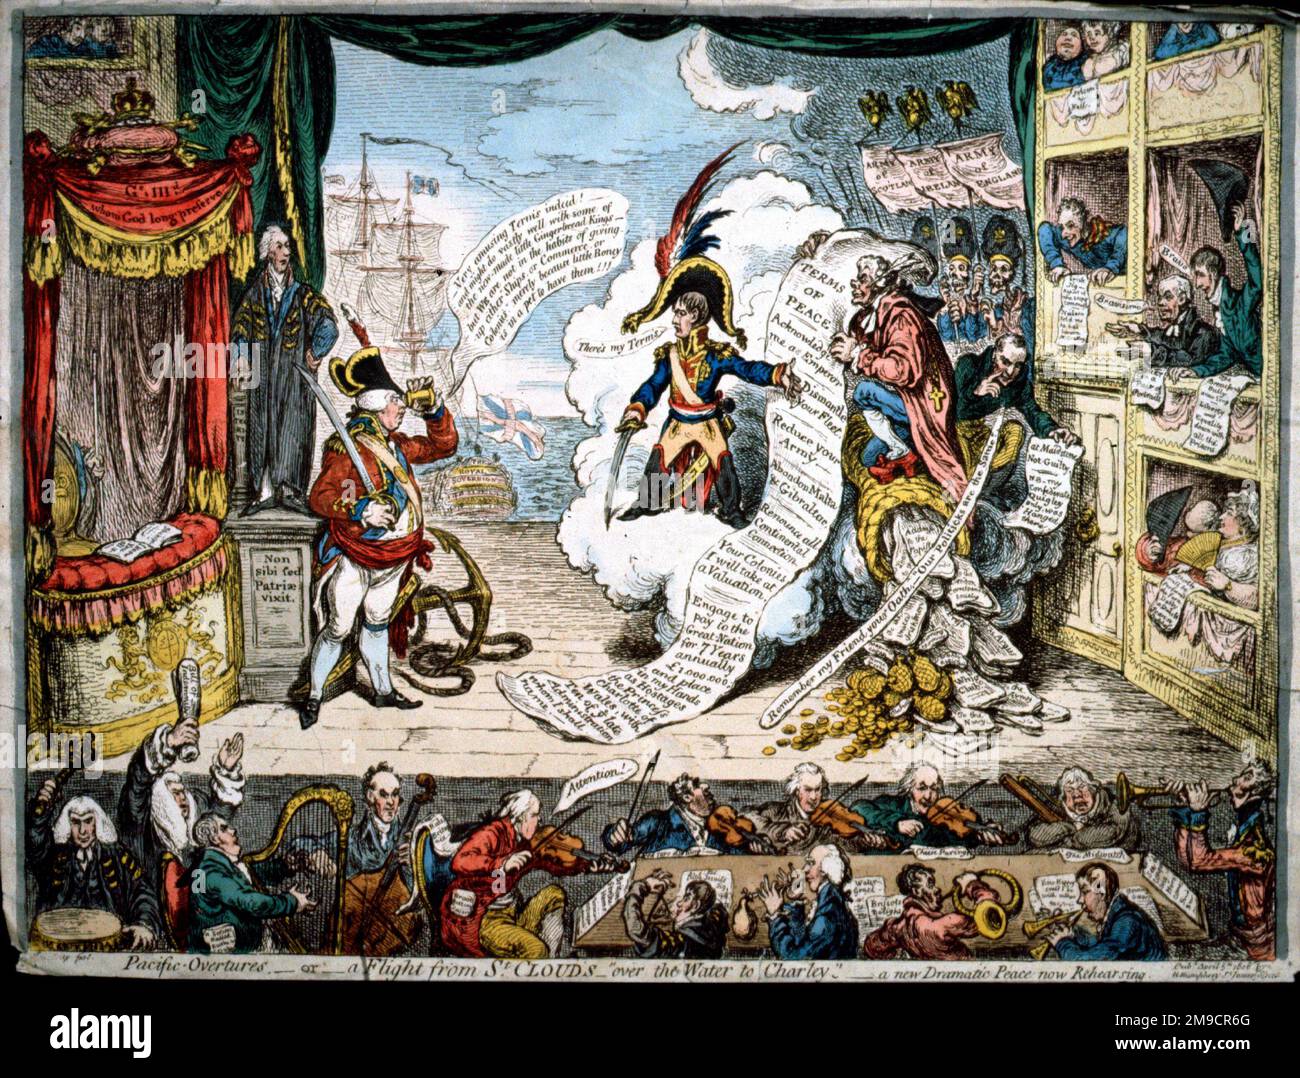 Pacific Overtures, ou Un vol de St Clouds - au-dessus de l'eau à Charley - satire, Napoléon I offre des conditions au roi George III et Talleyrand Banque D'Images